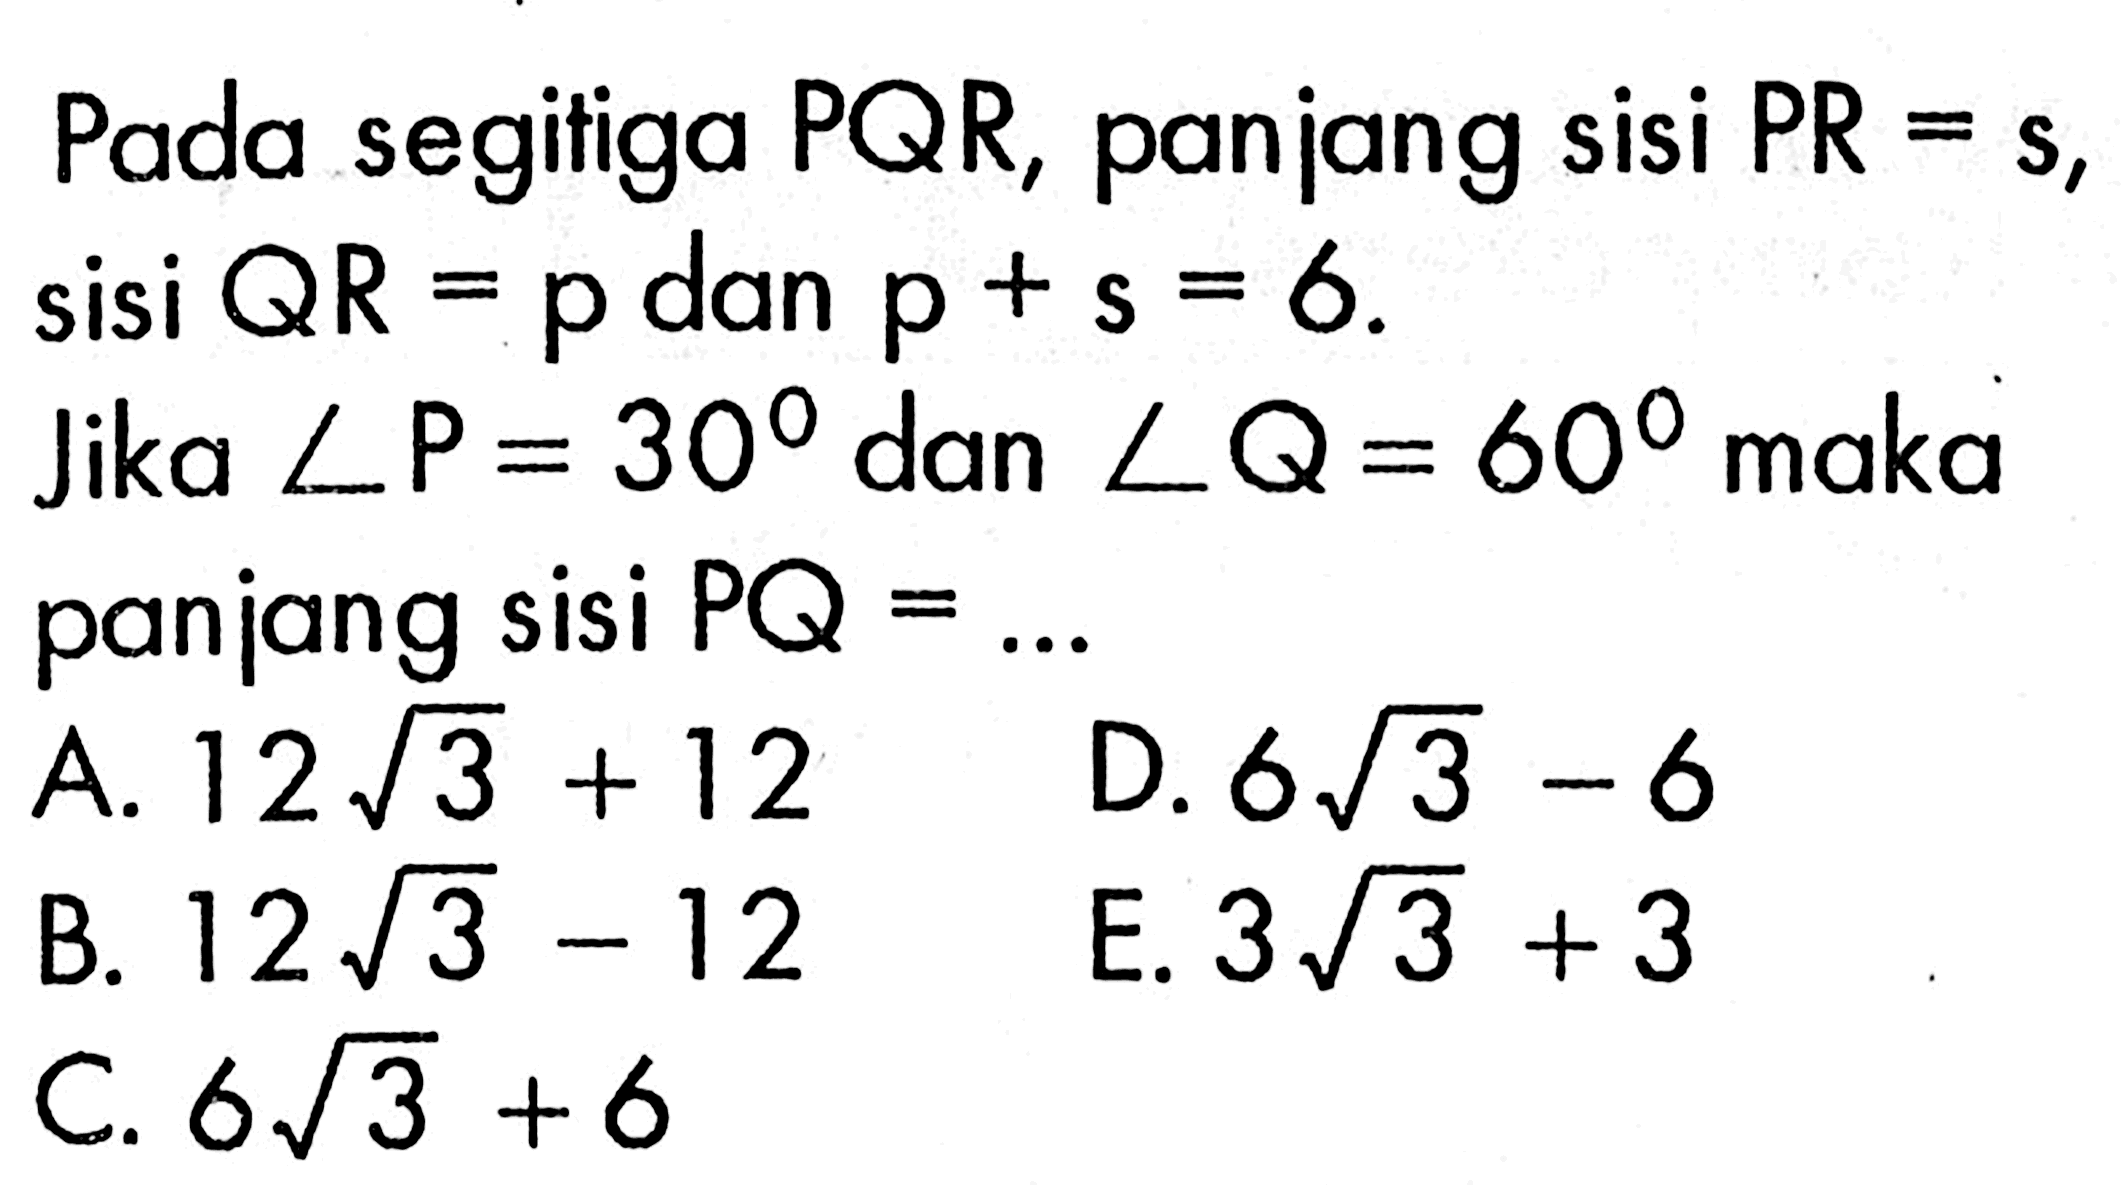 Pada segitiga PQR, panjang sisi PR=s, sisi QR=p dan p+s=6. Jika sudut P=30 dan sudut Q=60  maka panjang sisi PQ=.... 